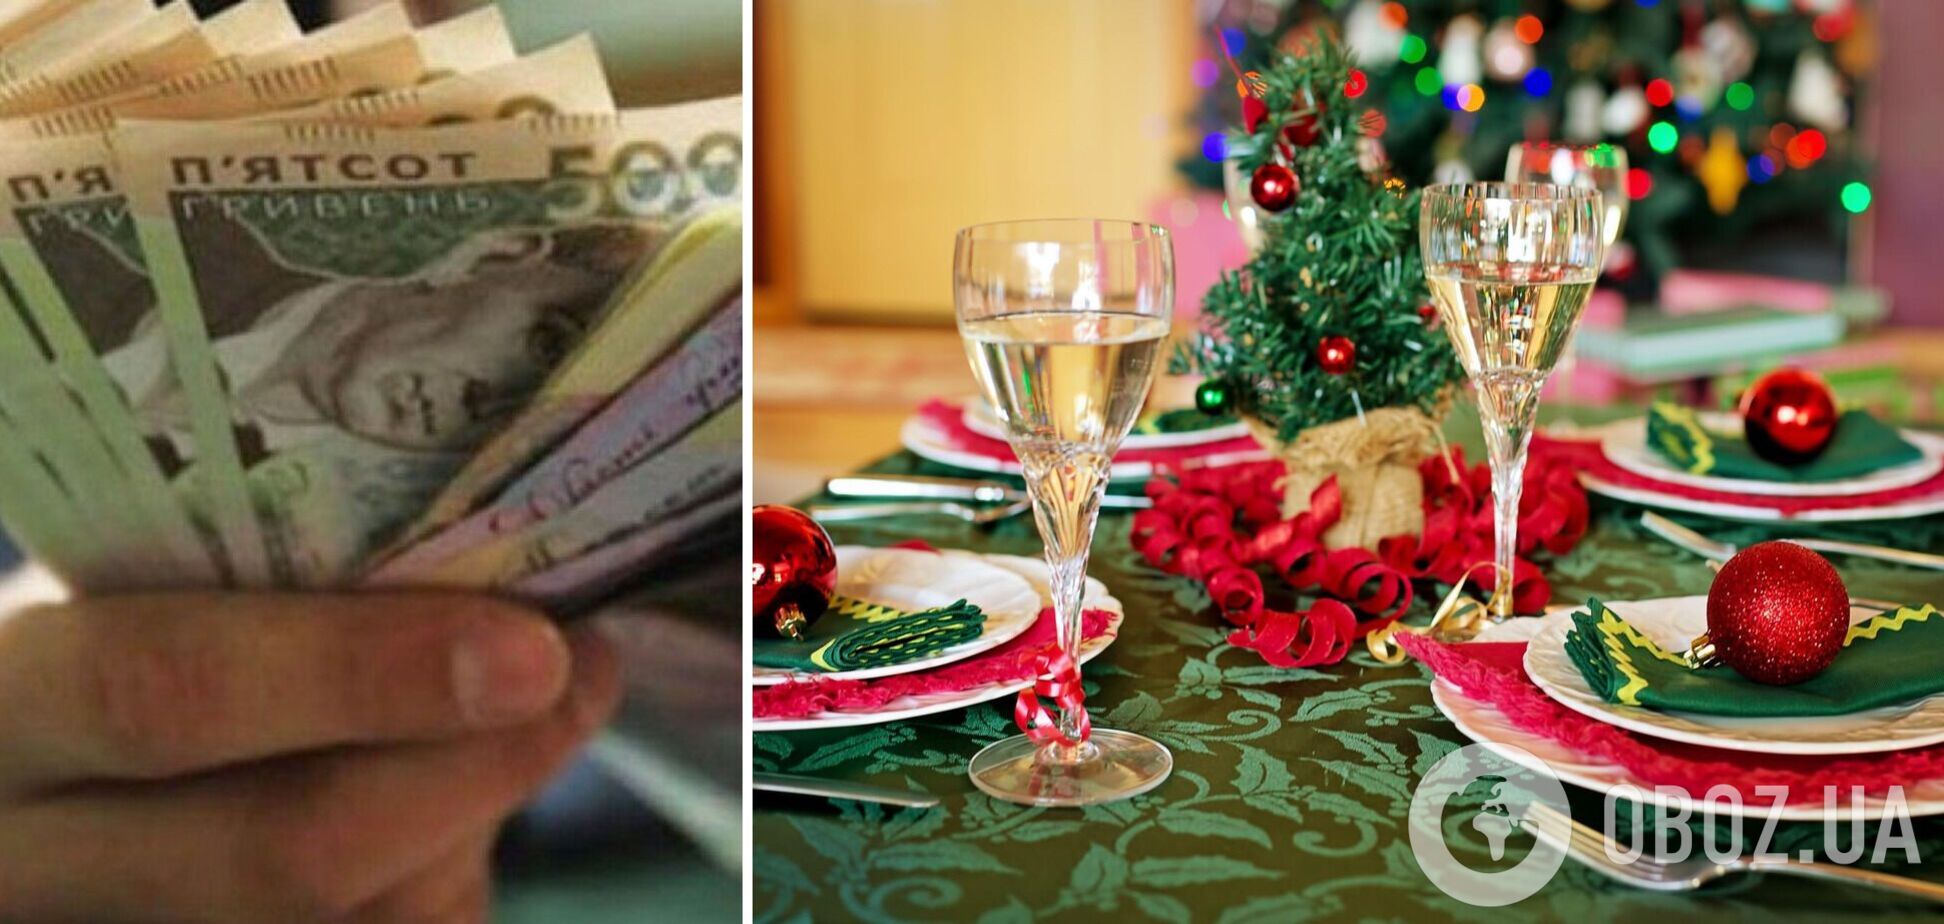 Сколько придется заплатить за новогодний стол